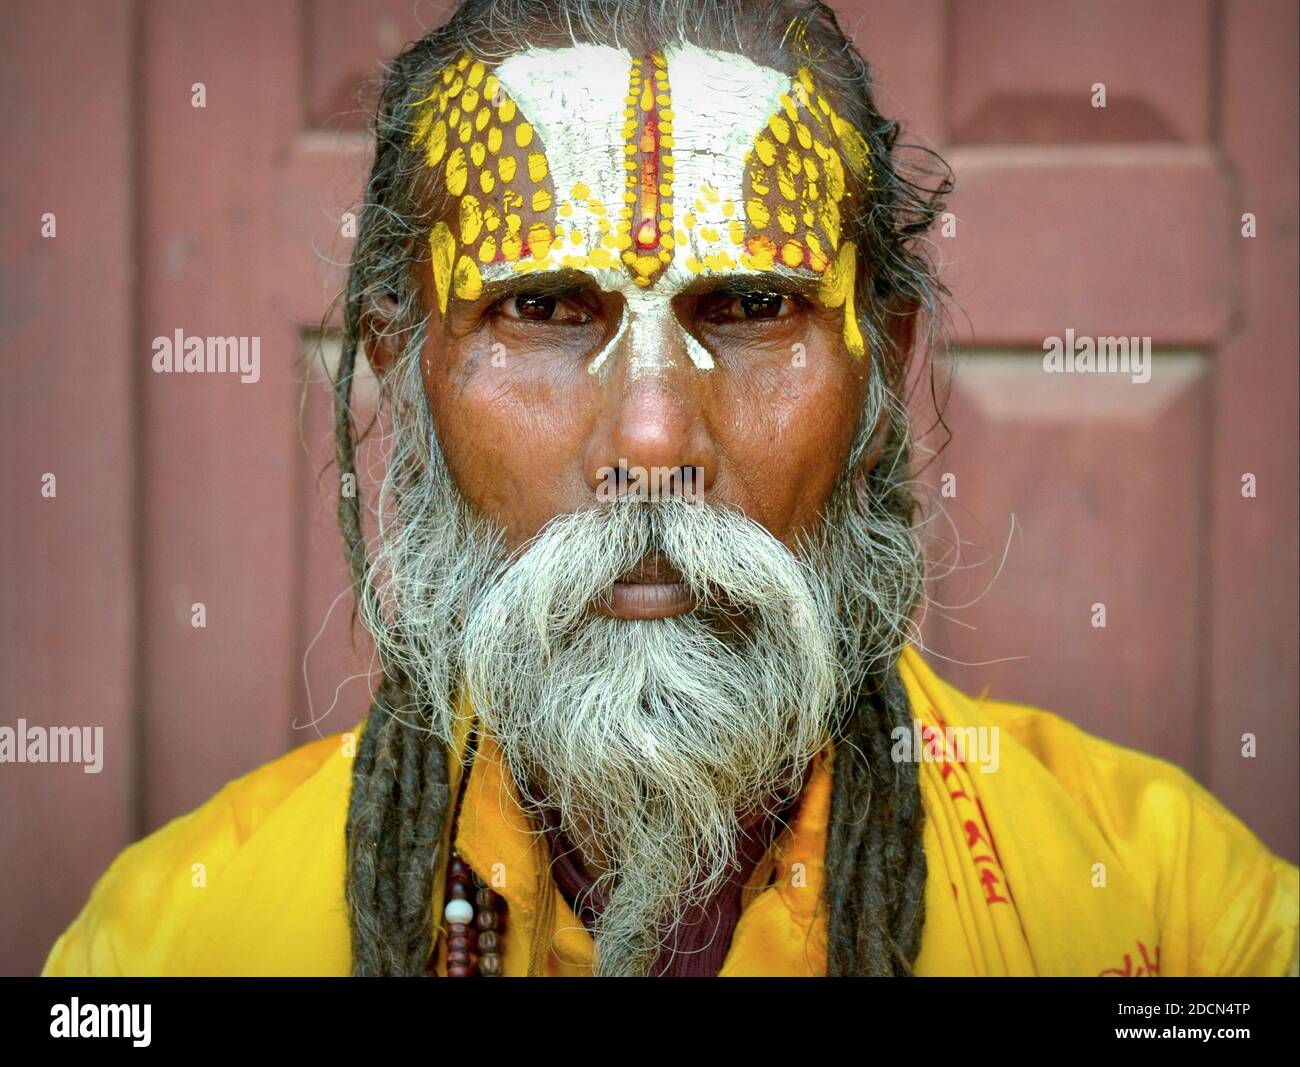 Old Nepali Vaishnavite sadhu (Hindu holy man who worships Vishnu) with elaborately painted urdhva pundra mark on his forehead poses for camera. Stock Photo